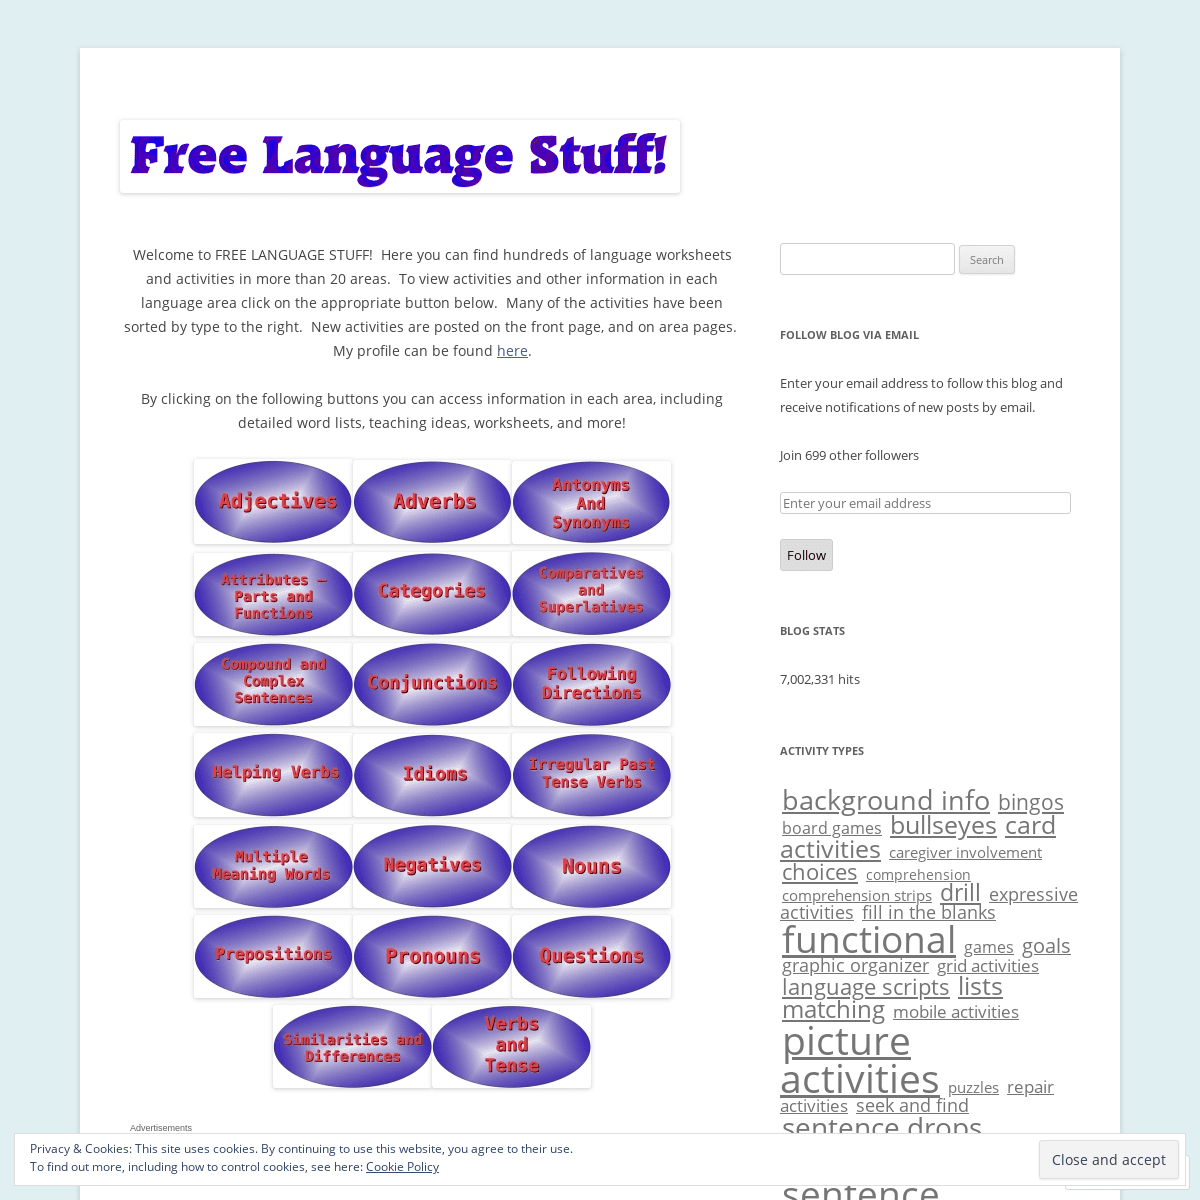 A complete backup of freelanguagestuff.com